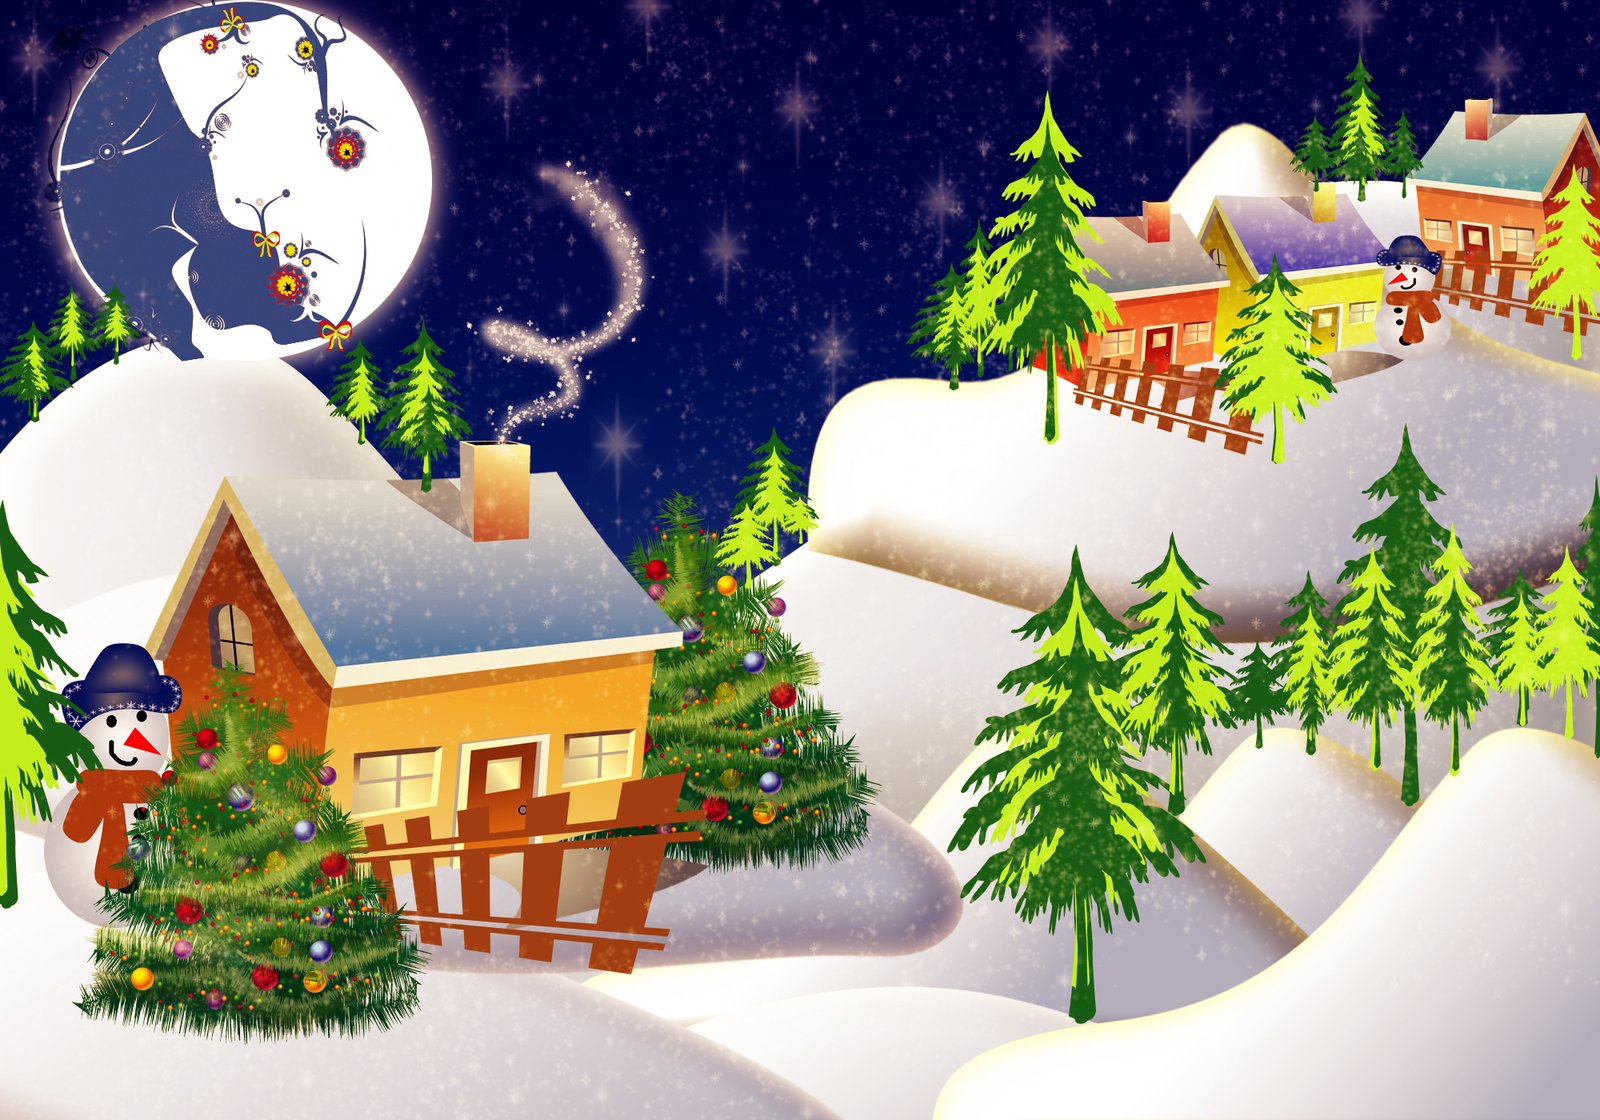 this is a christmas animated scene with a polar bear on snow